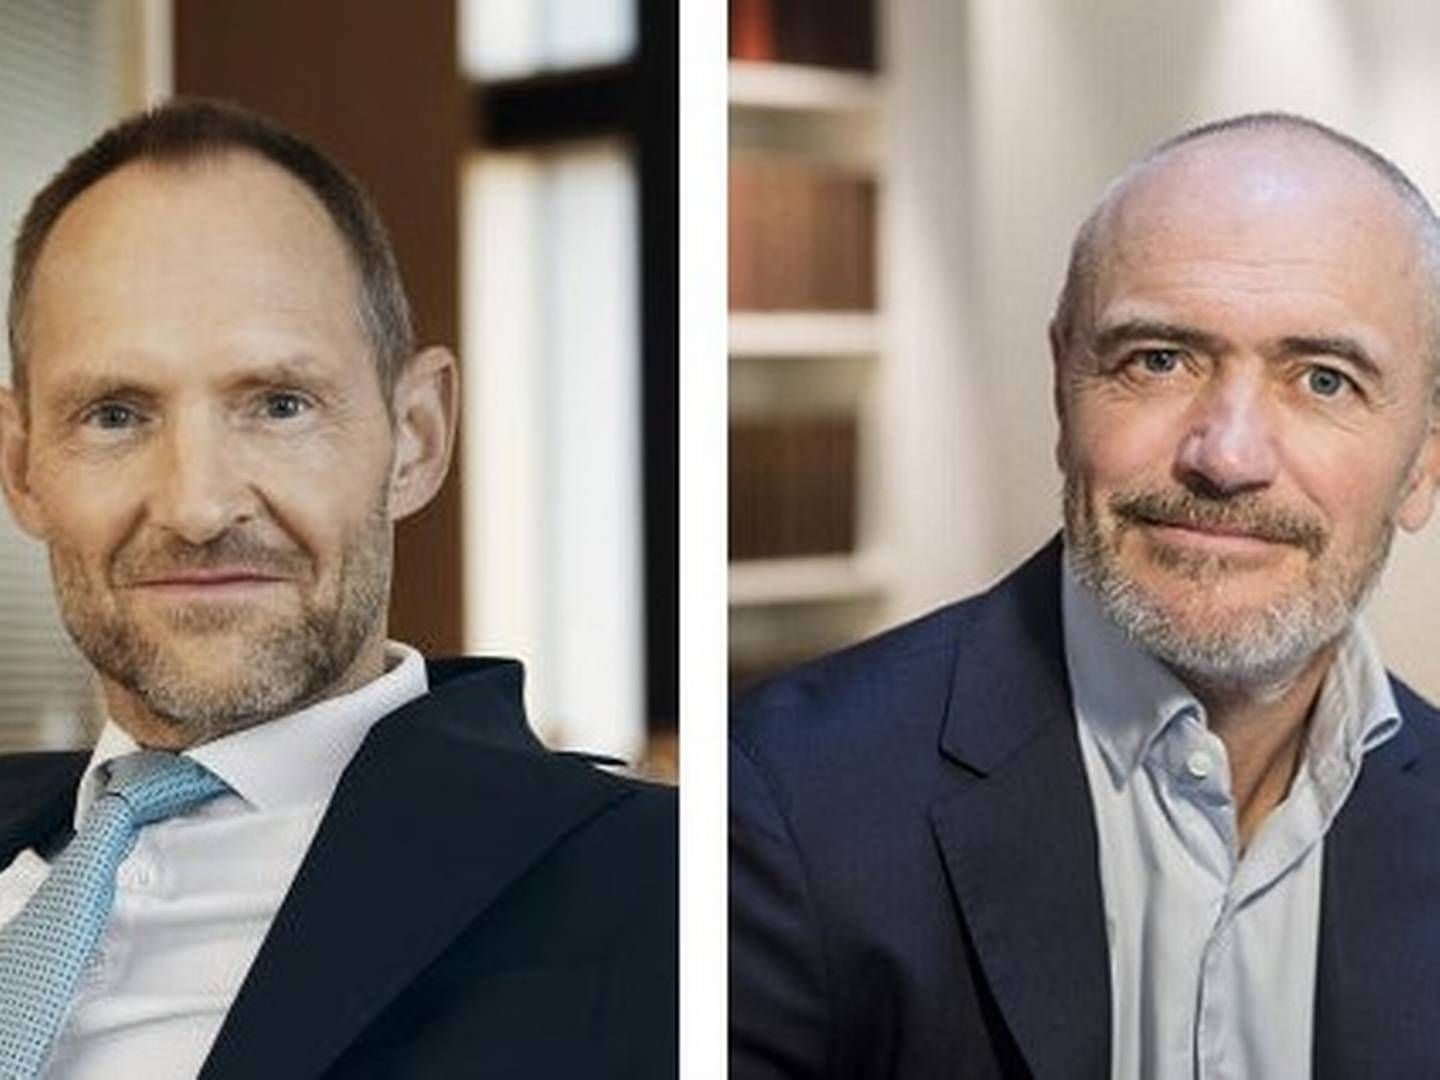 Martin André Dittmer (tv) og Steen Rode er topchefer i henholdvis Gorrissen Federspiel og Bech-Bruun, der ligger side om side i toppen af den danske advokatbranche. | Foto: PR/Nikolai Linares